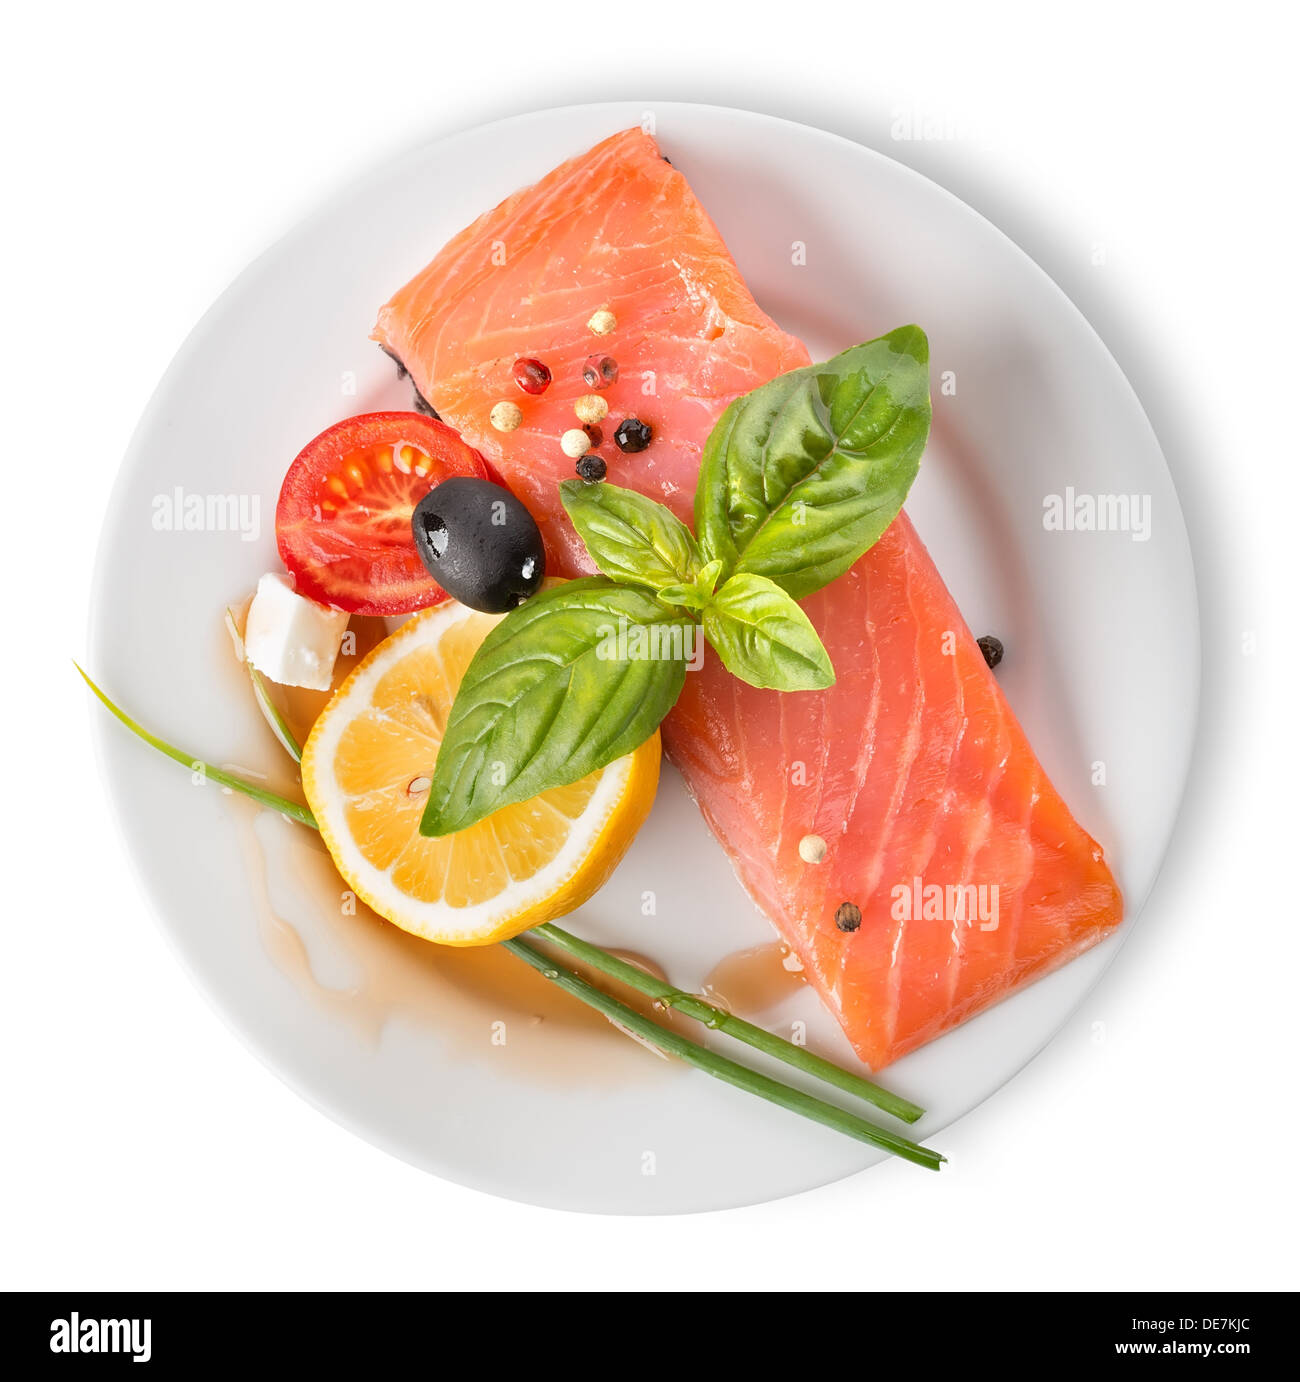 Filet de poisson rouge avec des légumes dans la plaque, isolated on white Banque D'Images